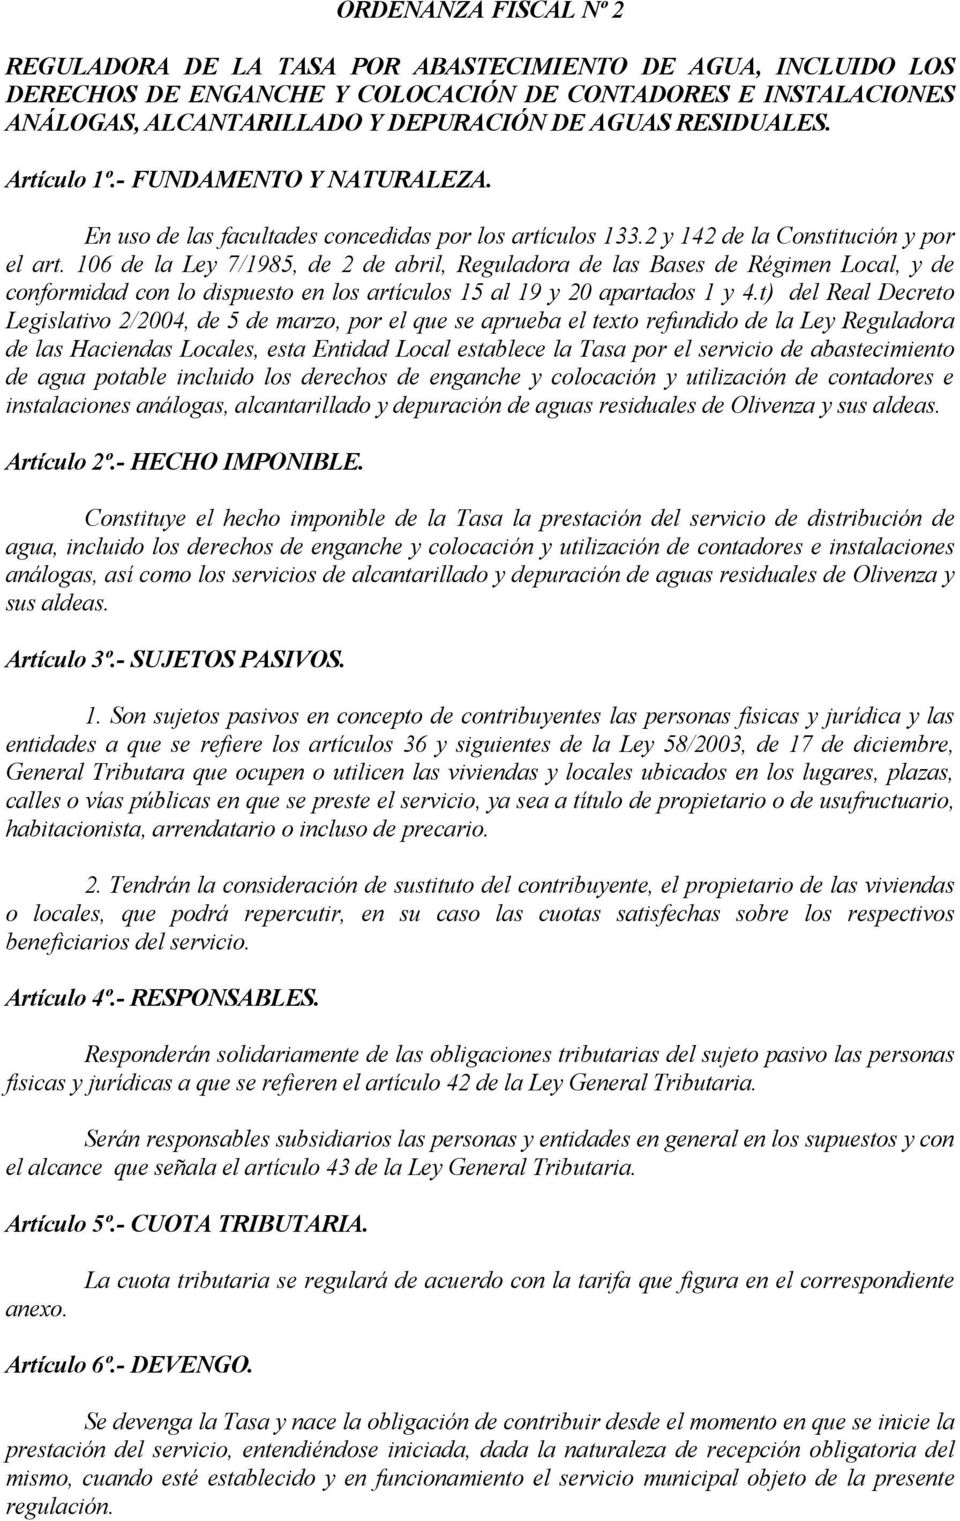 106 de la Ley 7/1985, de 2 de abril, Reguladora de las Bases de Régimen Local, y de conformidad con lo dispuesto en los artículos 15 al 19 y 20 apartados 1 y 4.